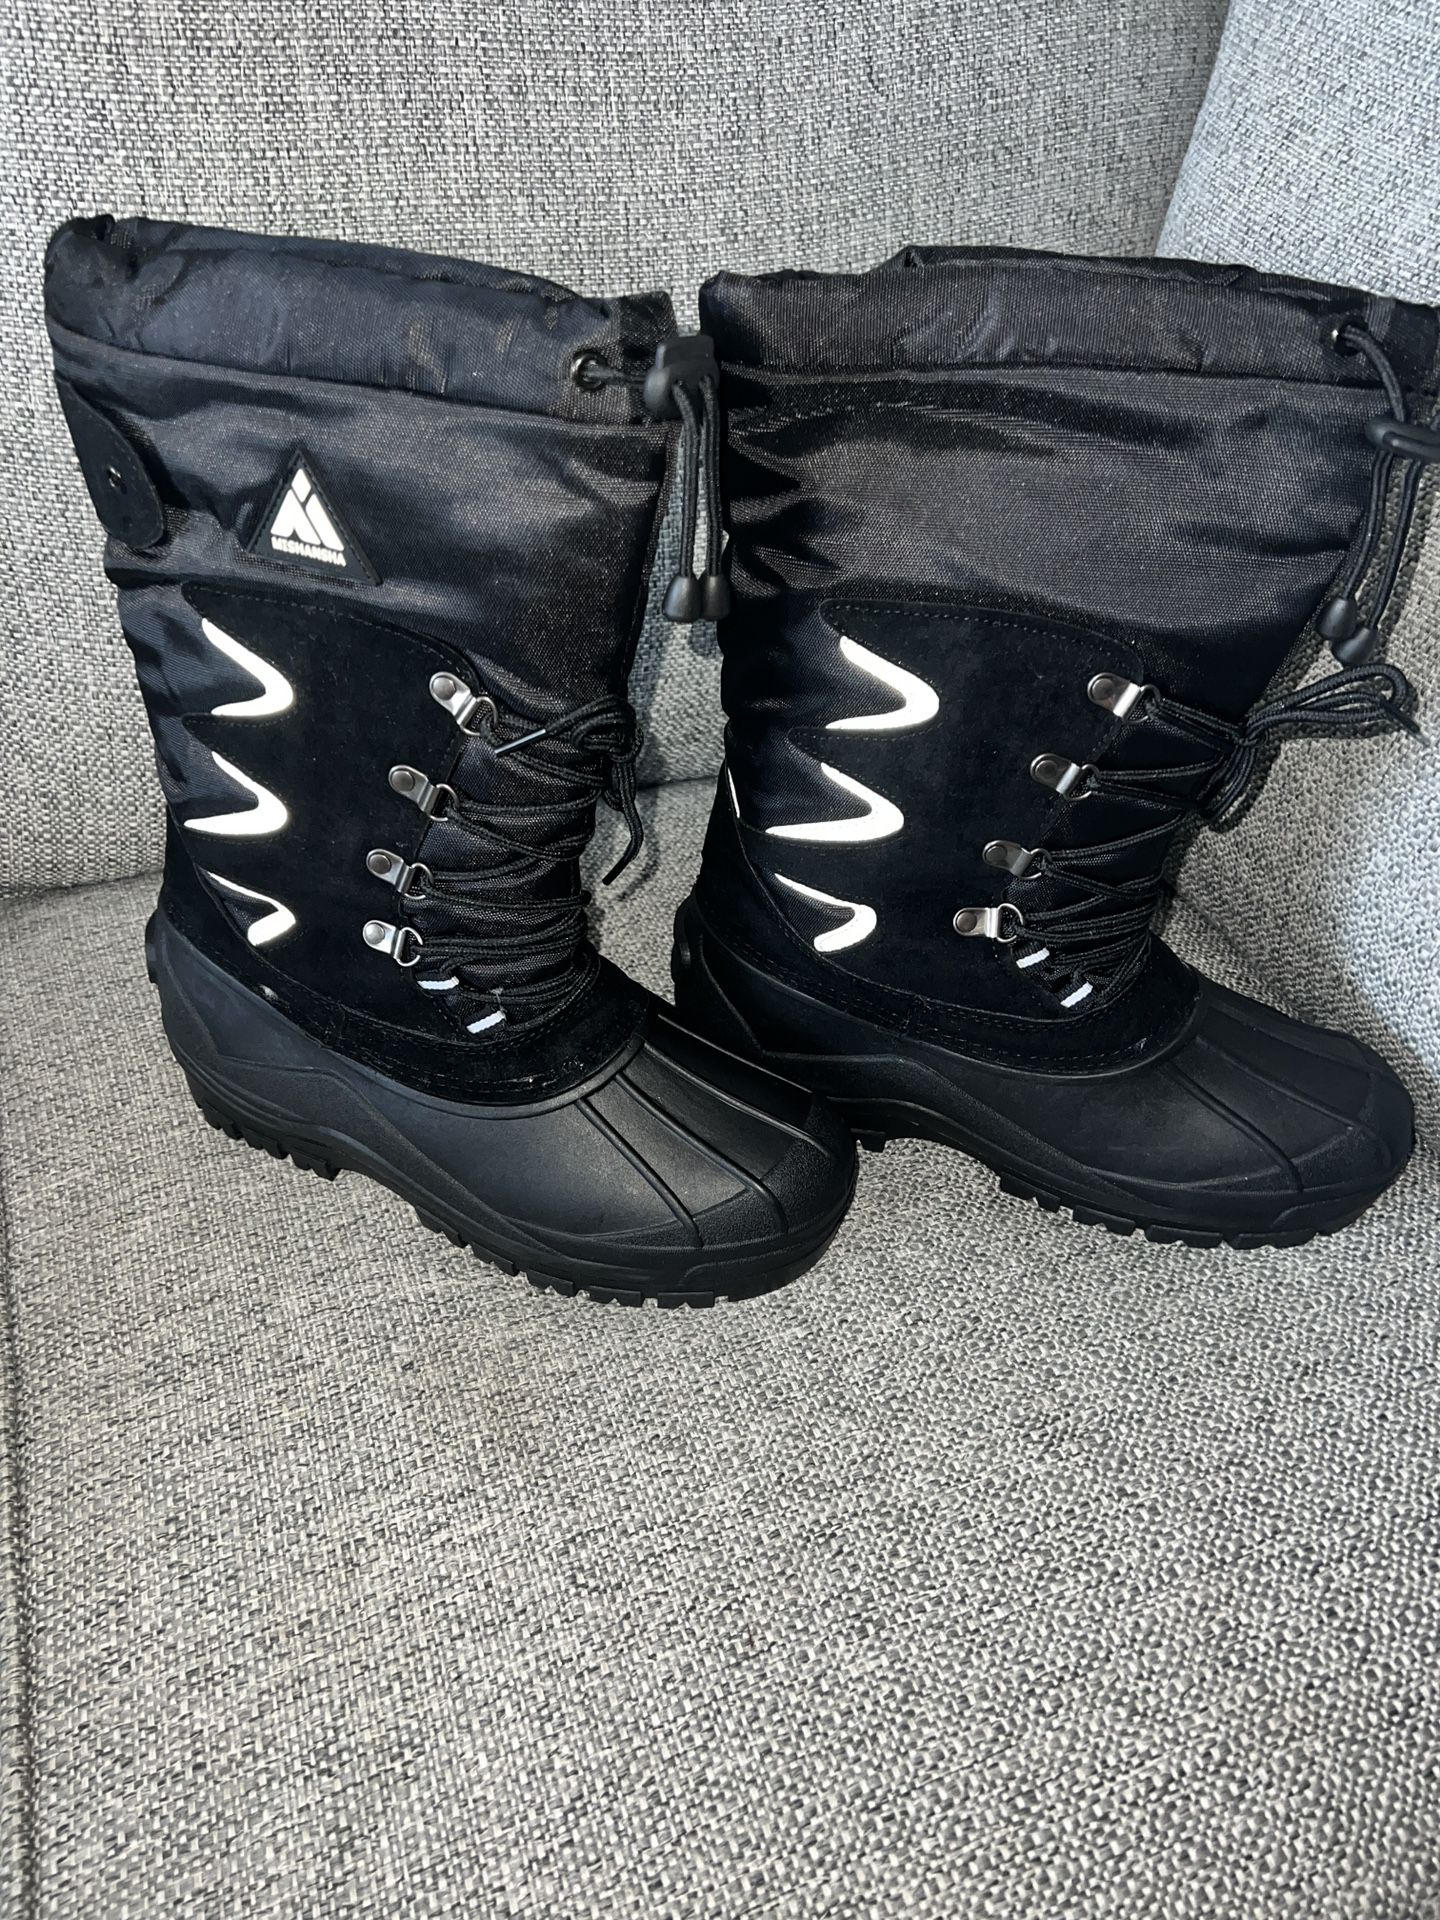 Waterproof snow boots 